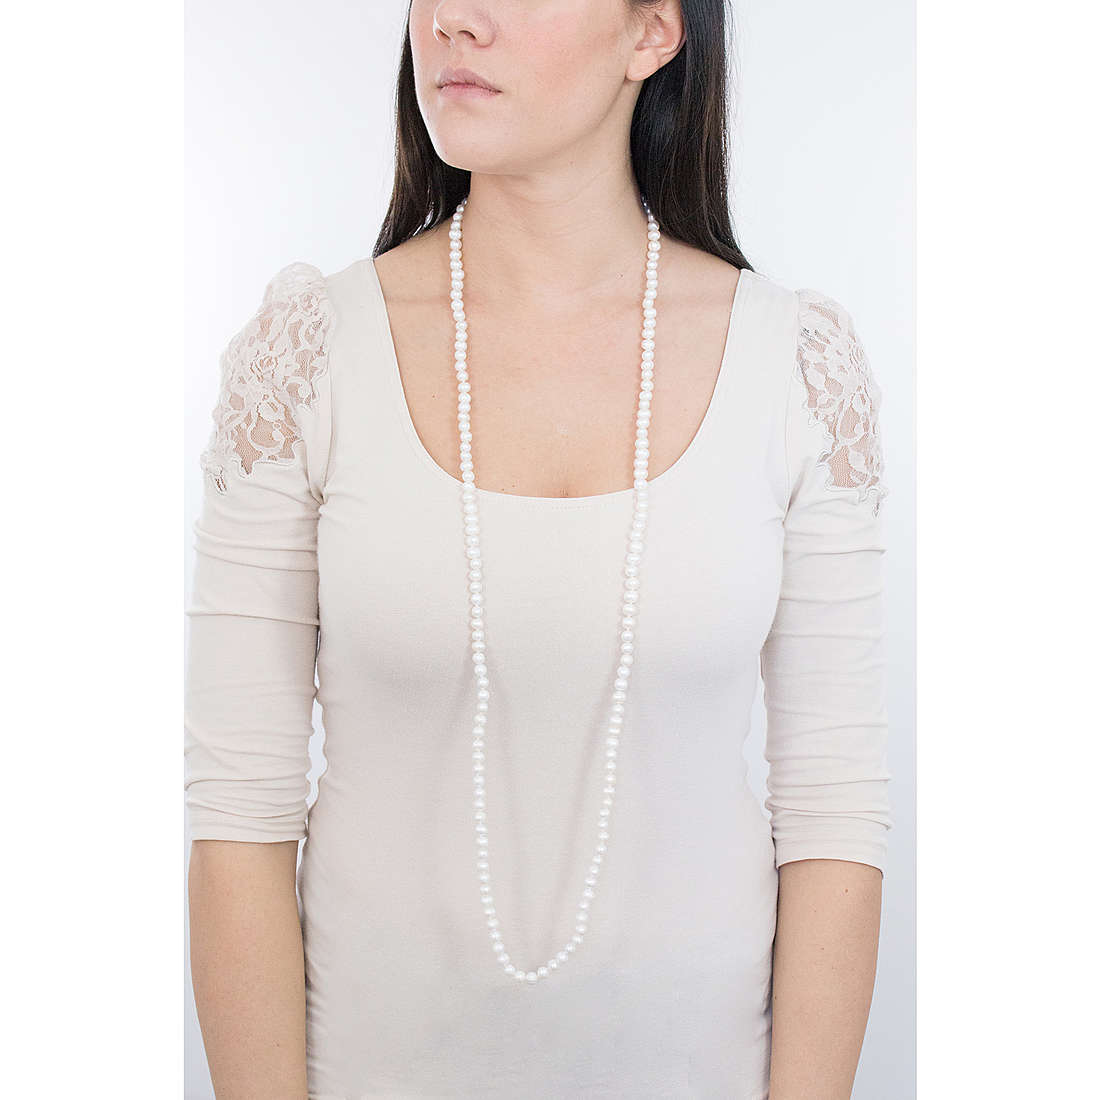 Comete necklaces Fantasia di Perle woman FBQ 114 wearing